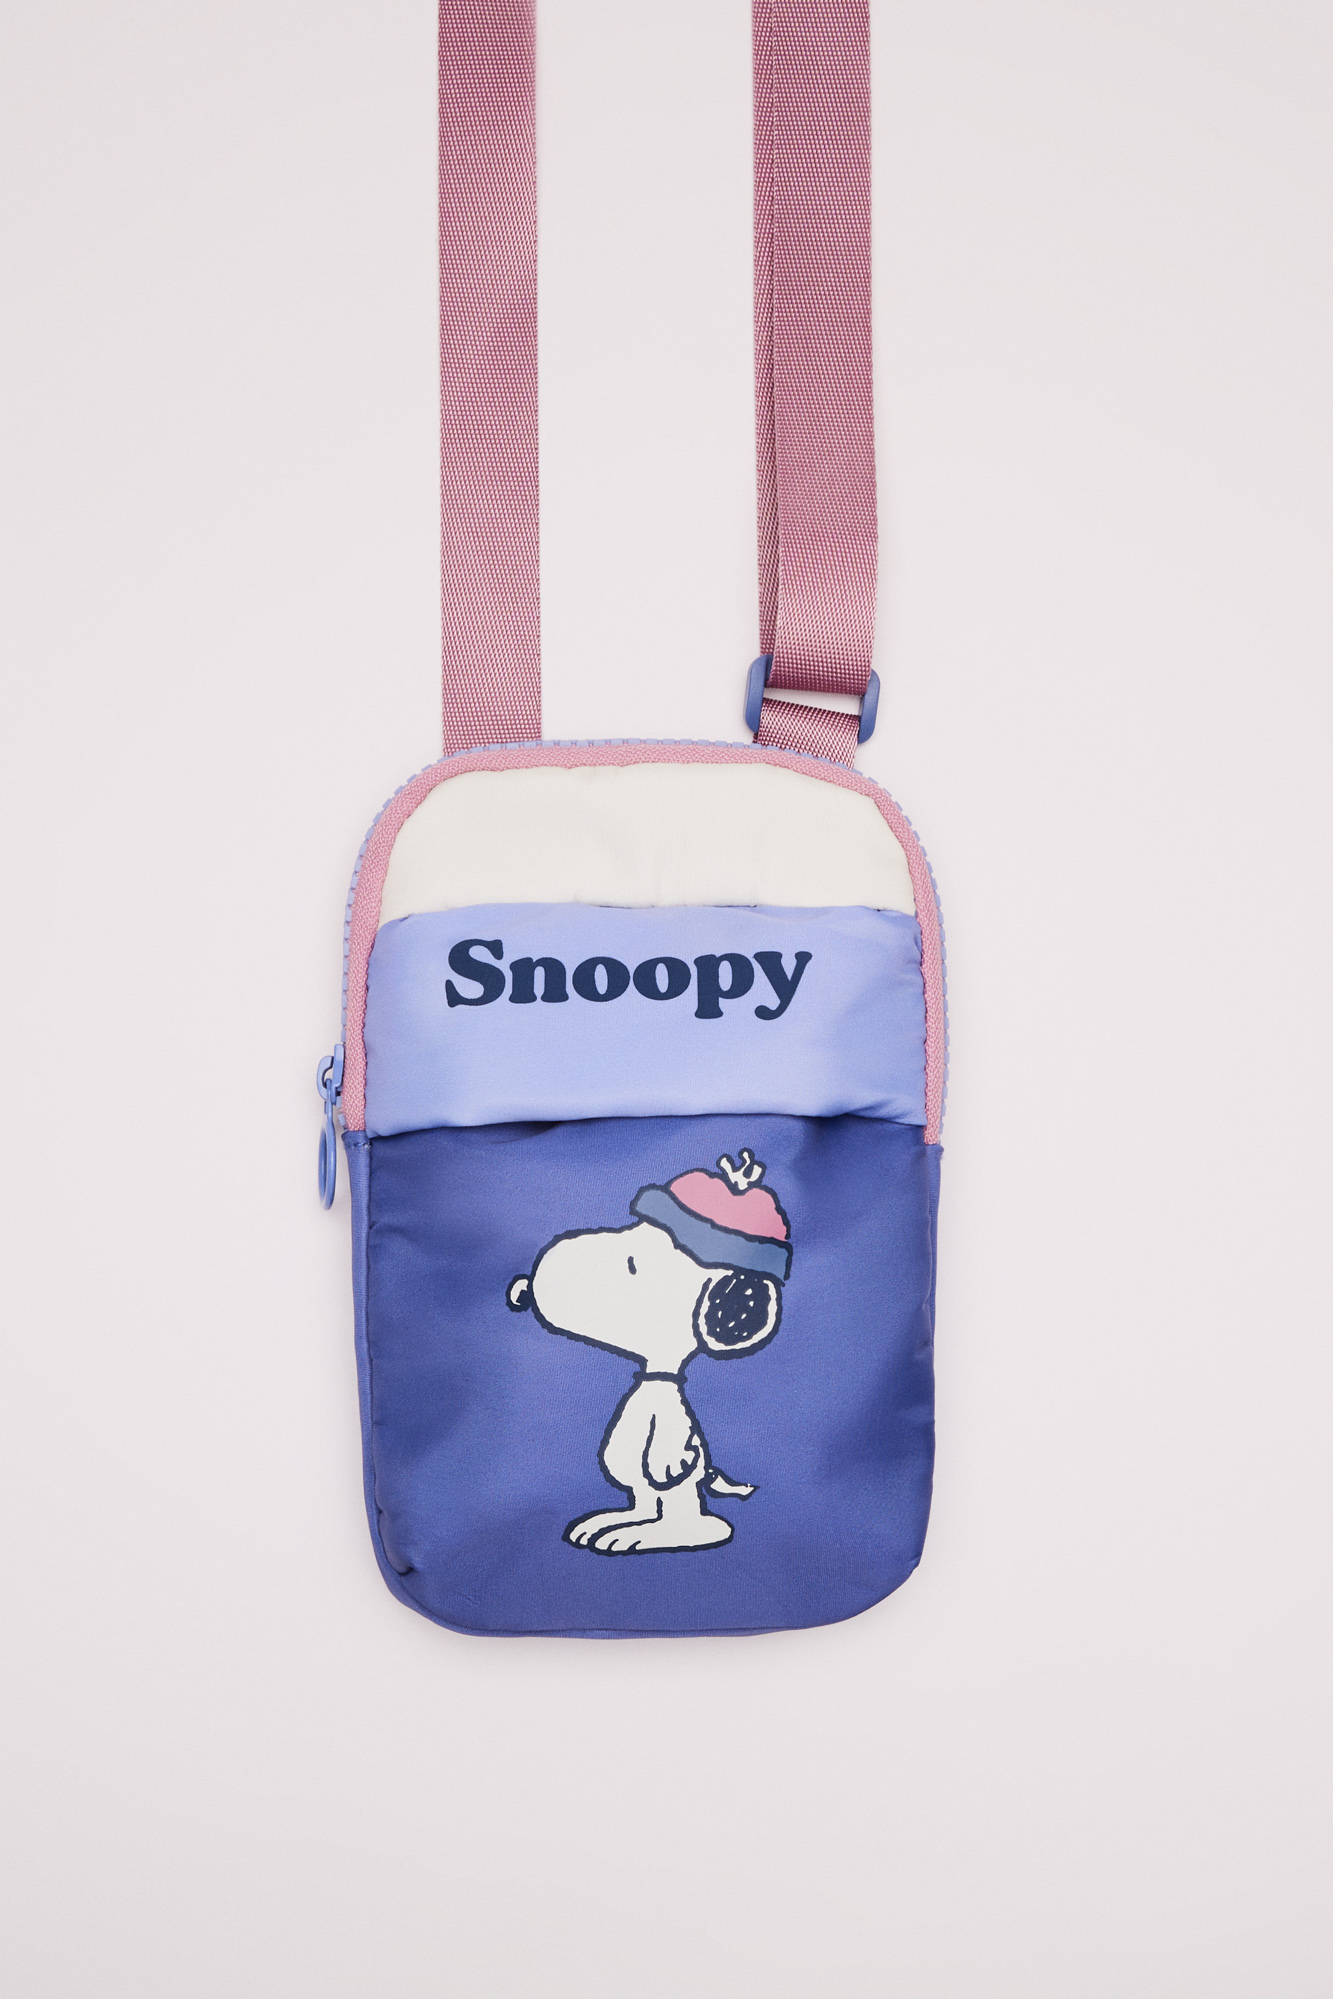 Funda móvil cinta Snoopy | Complementos y accesorios de mujer | WomenSecret